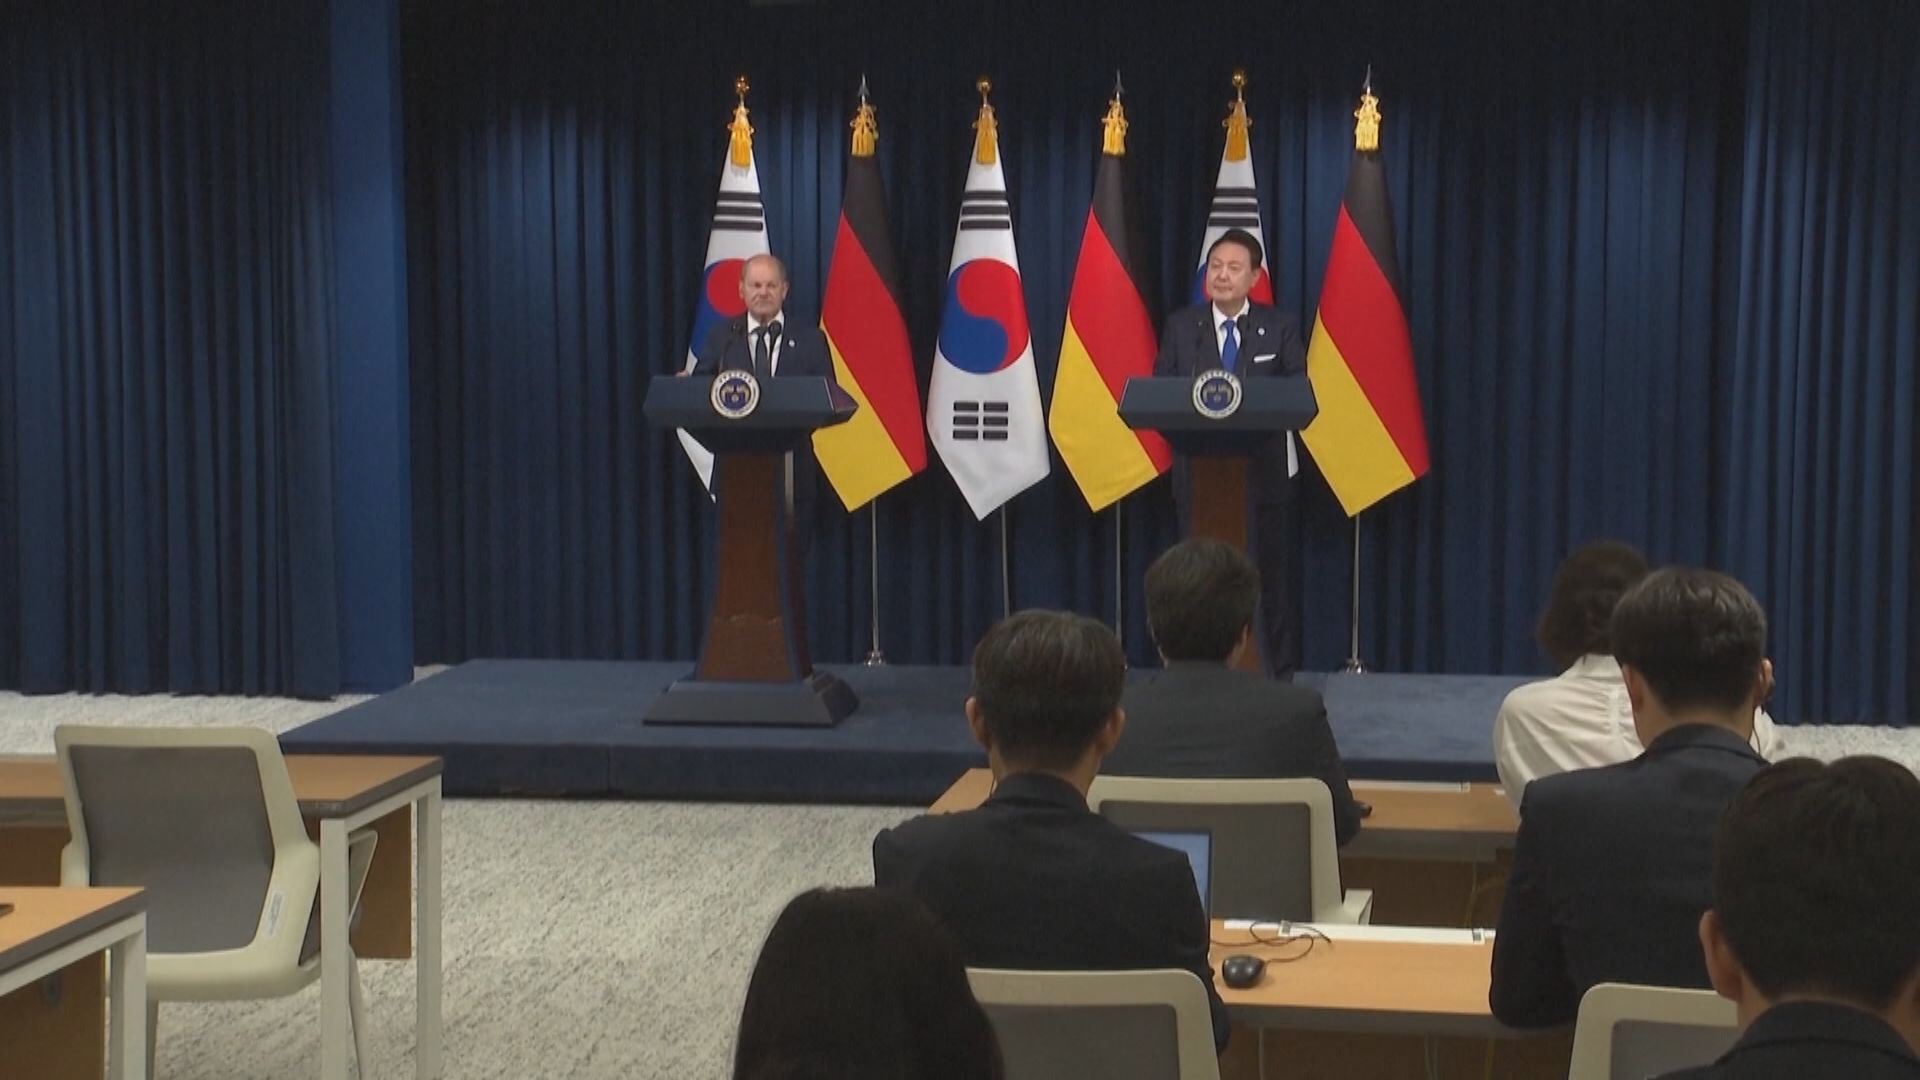 朔爾茨到訪首爾承諾與南韓加強合作應對北韓核挑戰